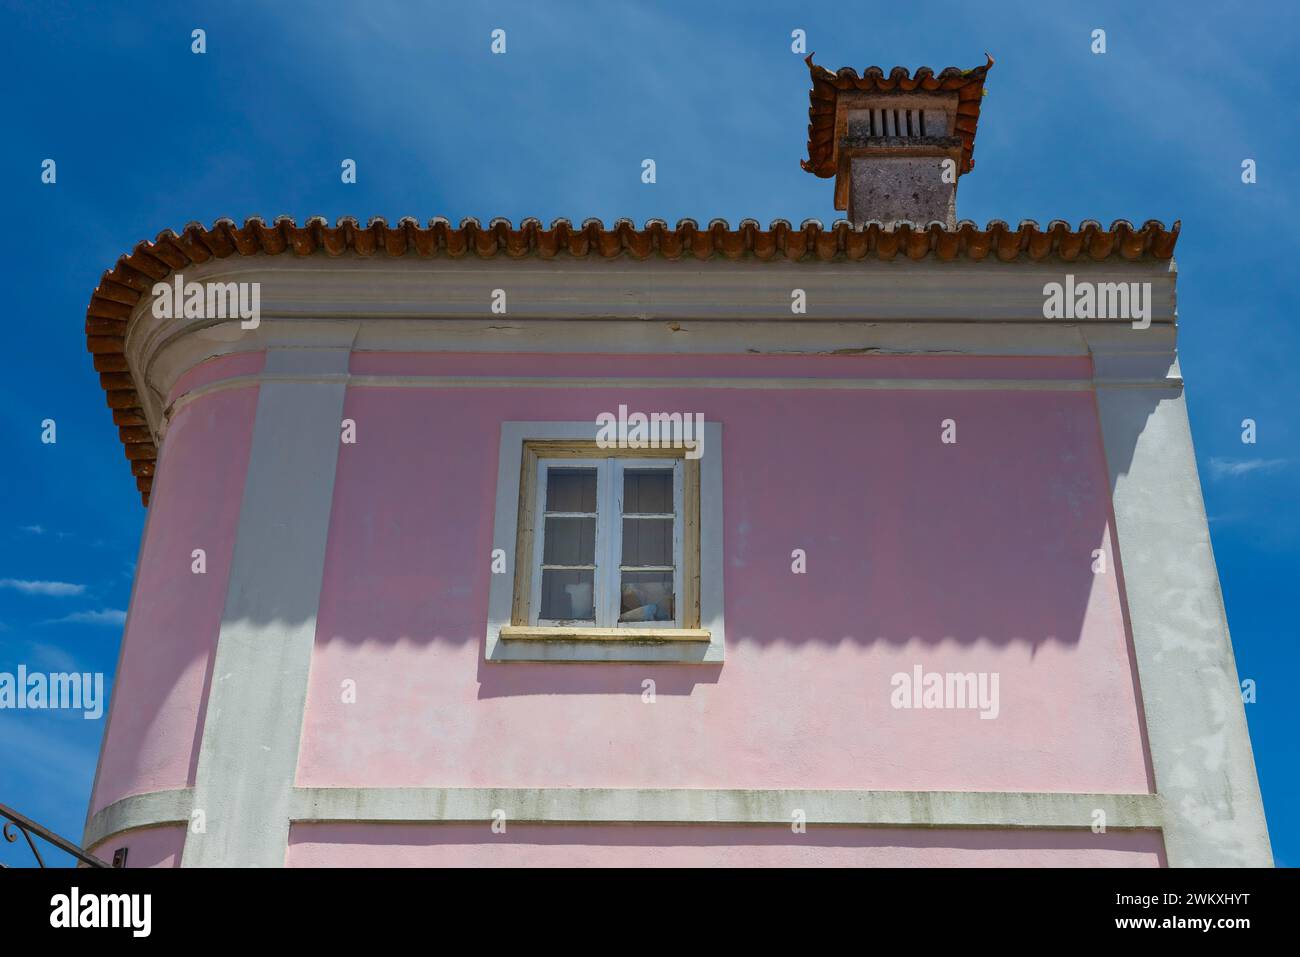 Façade de maison aux couleurs pastel, architecture, méditerranéenne, sud de l'Europe, maison, propriété, bâtiment, vie, façade, fenêtre, pastel, rose, vieille épingle Banque D'Images